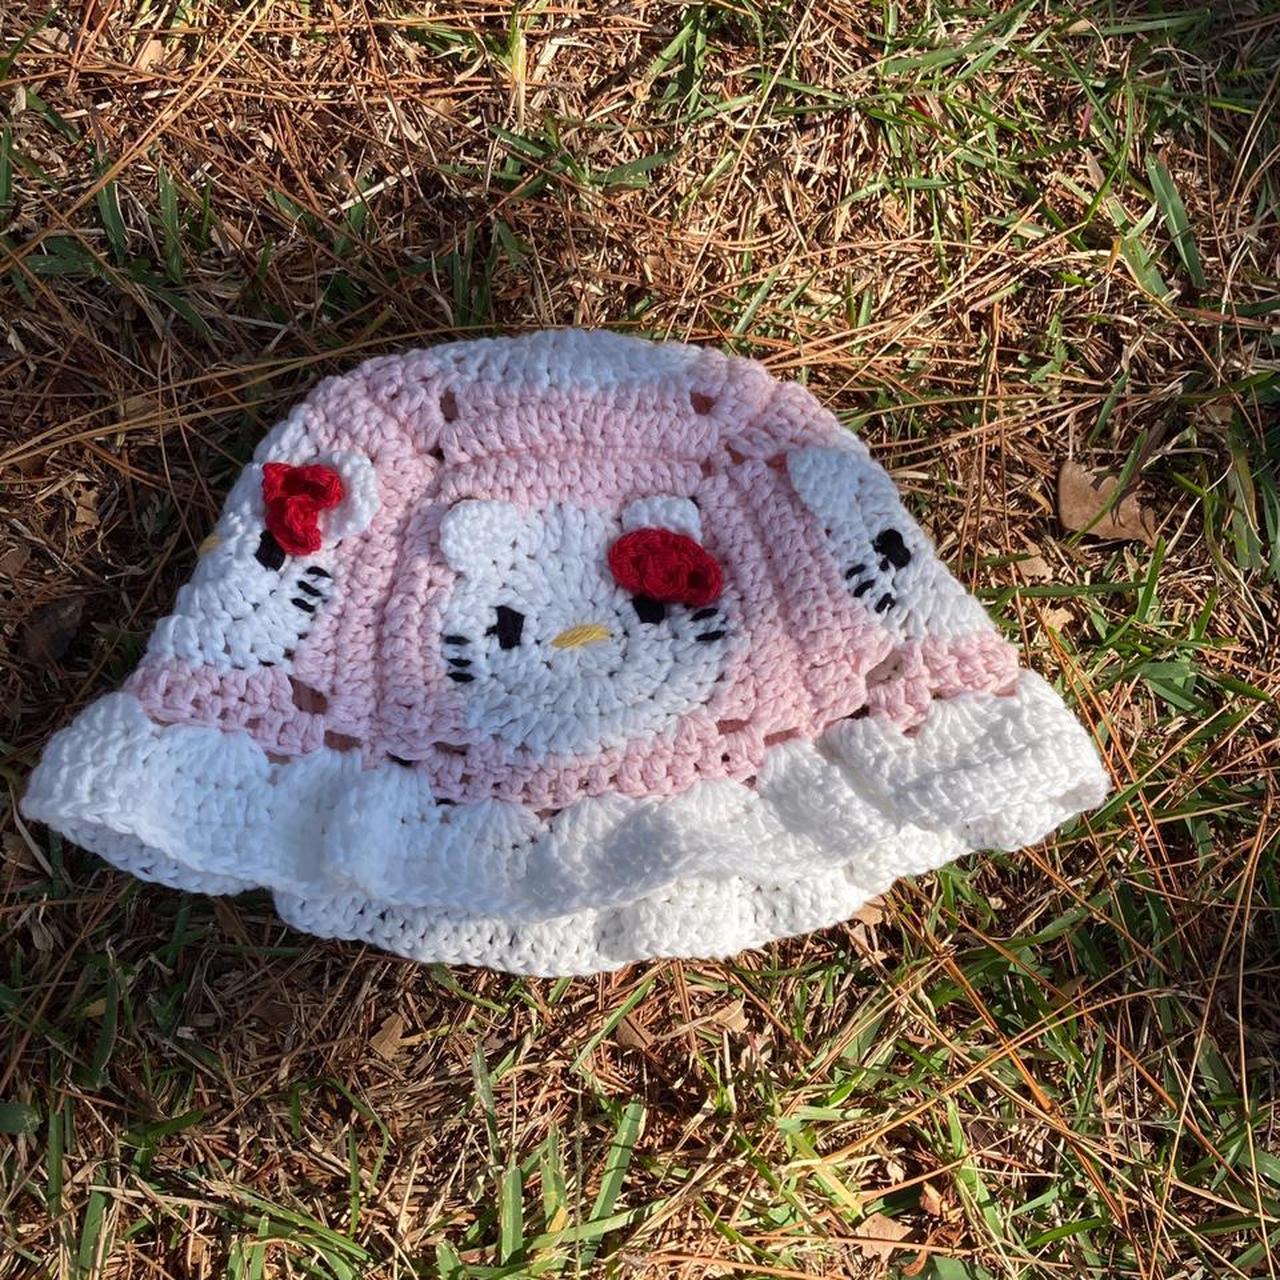 Crochet in Color: Hello Kitty Hat Pattern